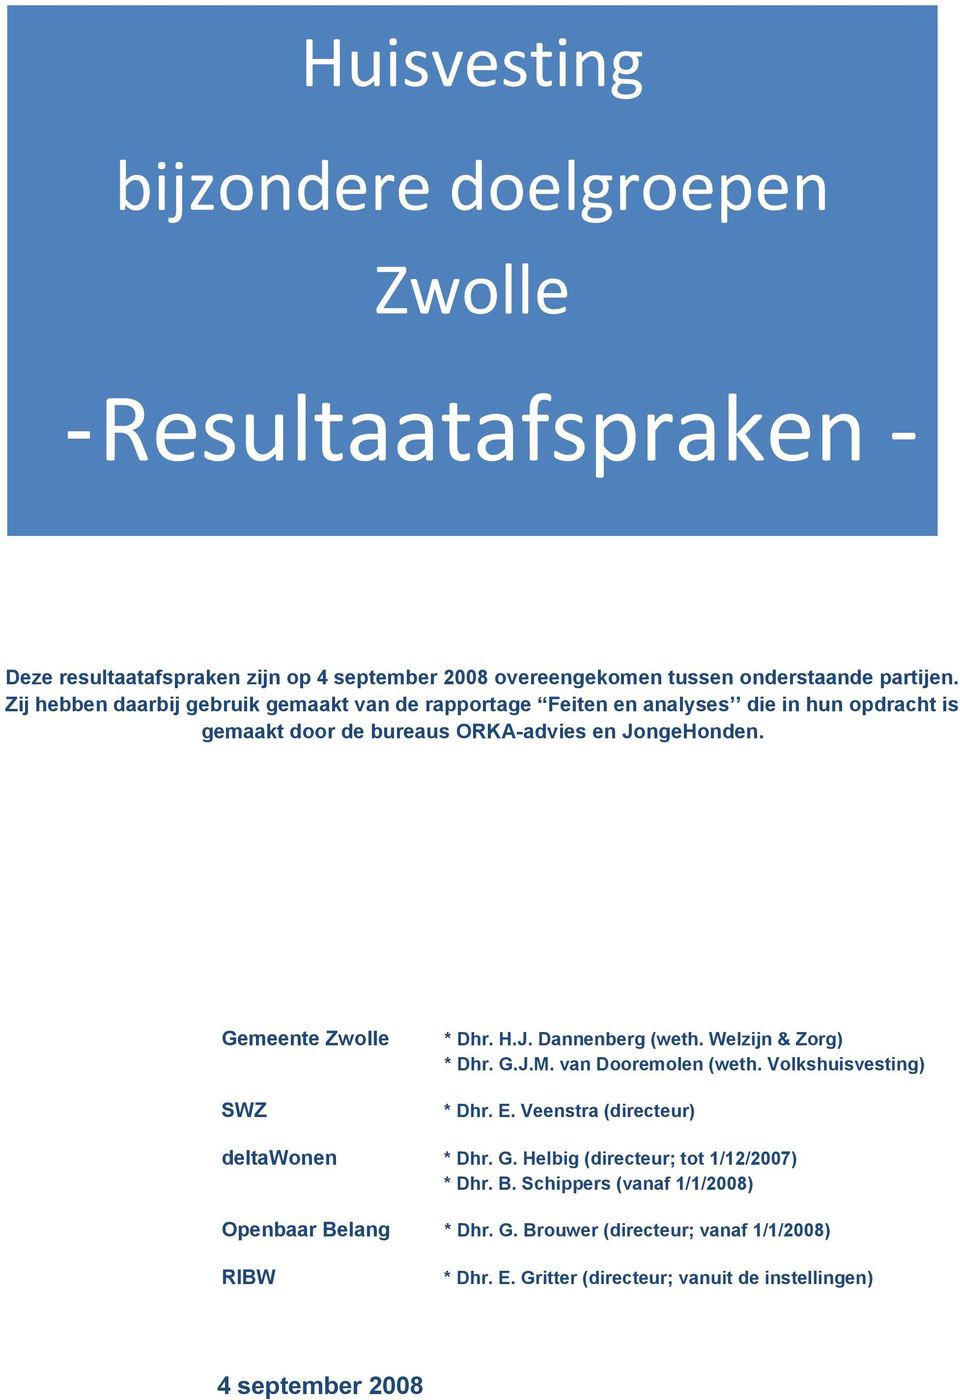 Gemeente Zwolle SWZ * Dhr. H.J. Dannenberg (weth. Welzijn & Zorg) * Dhr. G.J.M. van Dooremolen (weth. Volkshuisvesting) * Dhr. E. Veenstra (directeur) deltawonen * Dhr. G. Helbig (directeur; tot 1/12/2007) * Dhr.